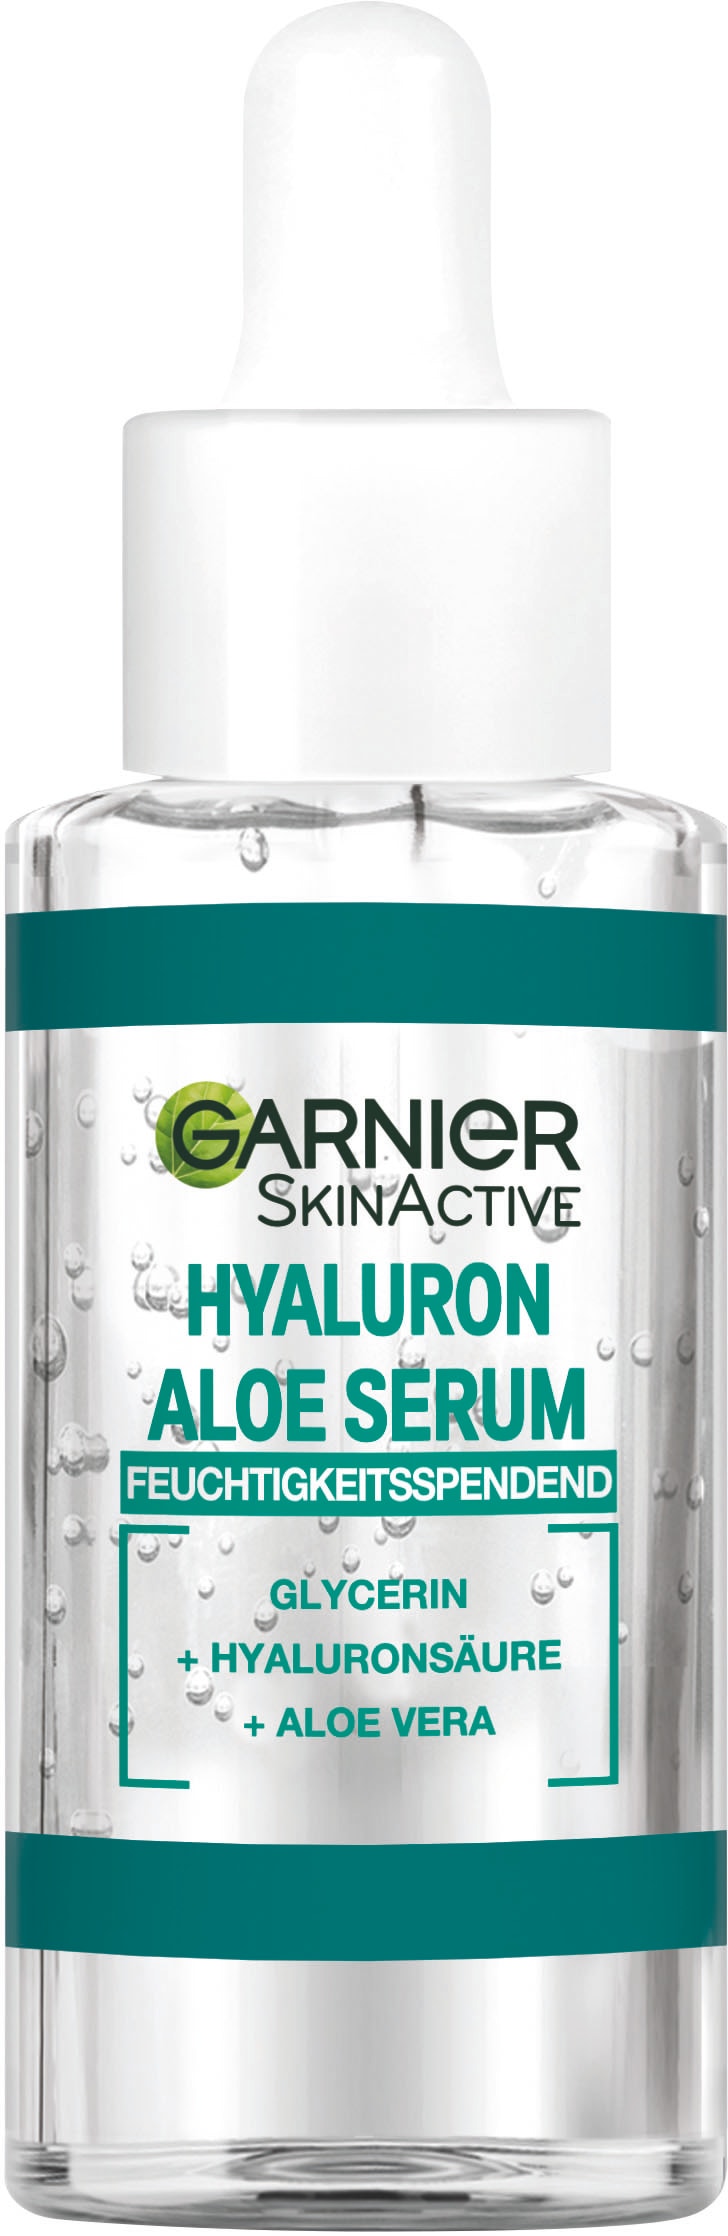 Aloe Serum« Gesichtsserum bei GARNIER bestellen Hyaluron online »SkinActive OTTO